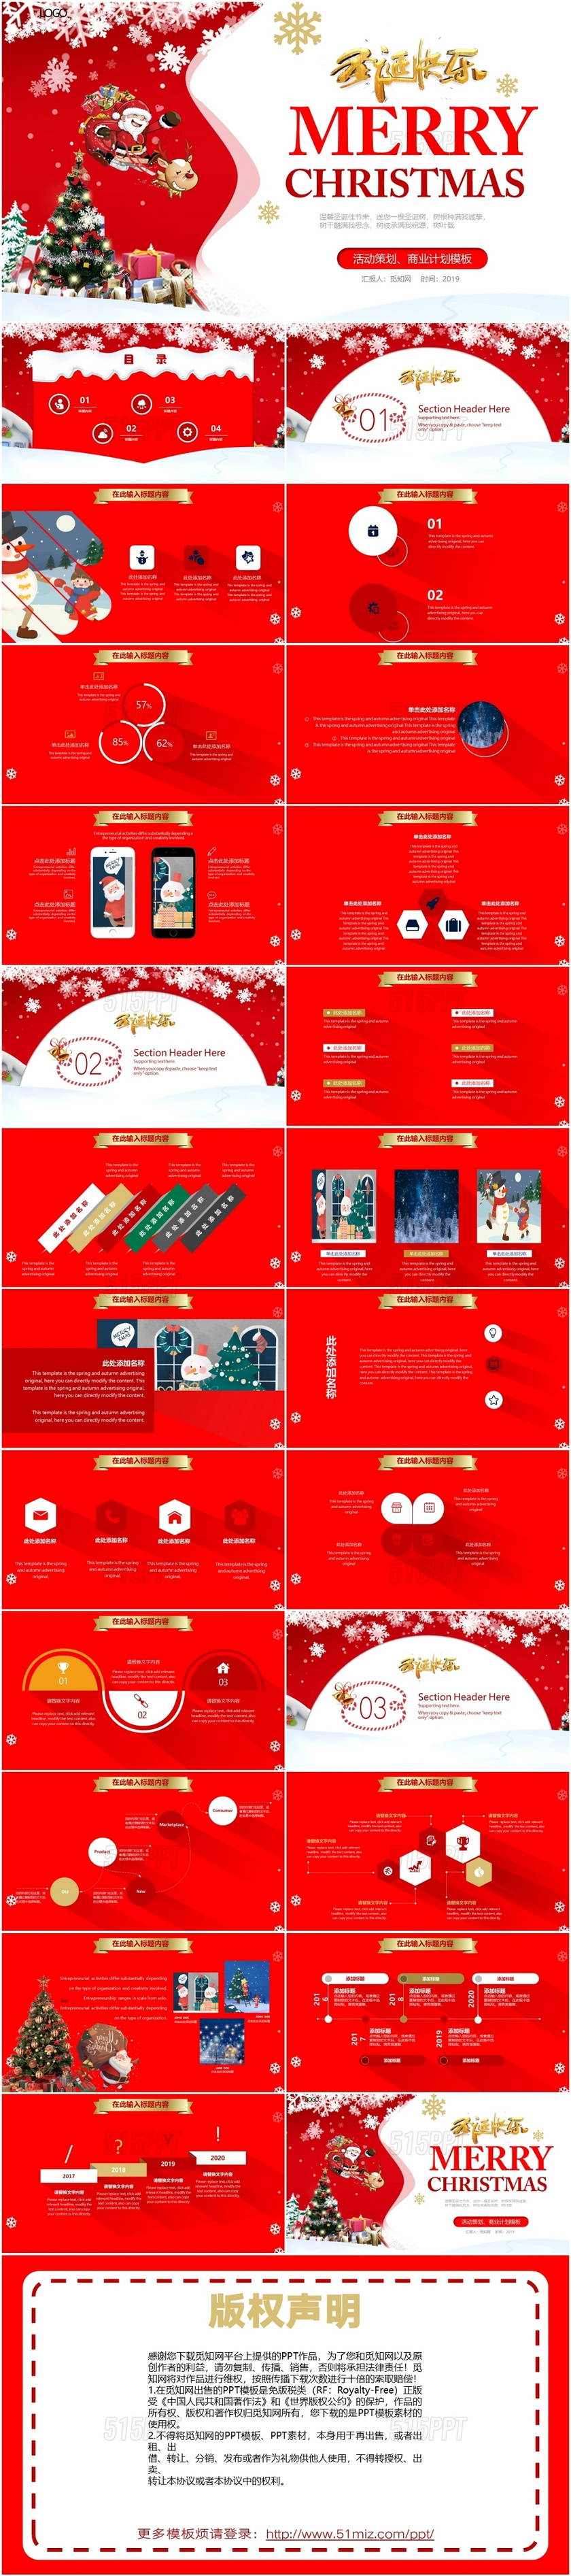 红色卡通扁平圣诞节活动策划冬天节日PPT模板